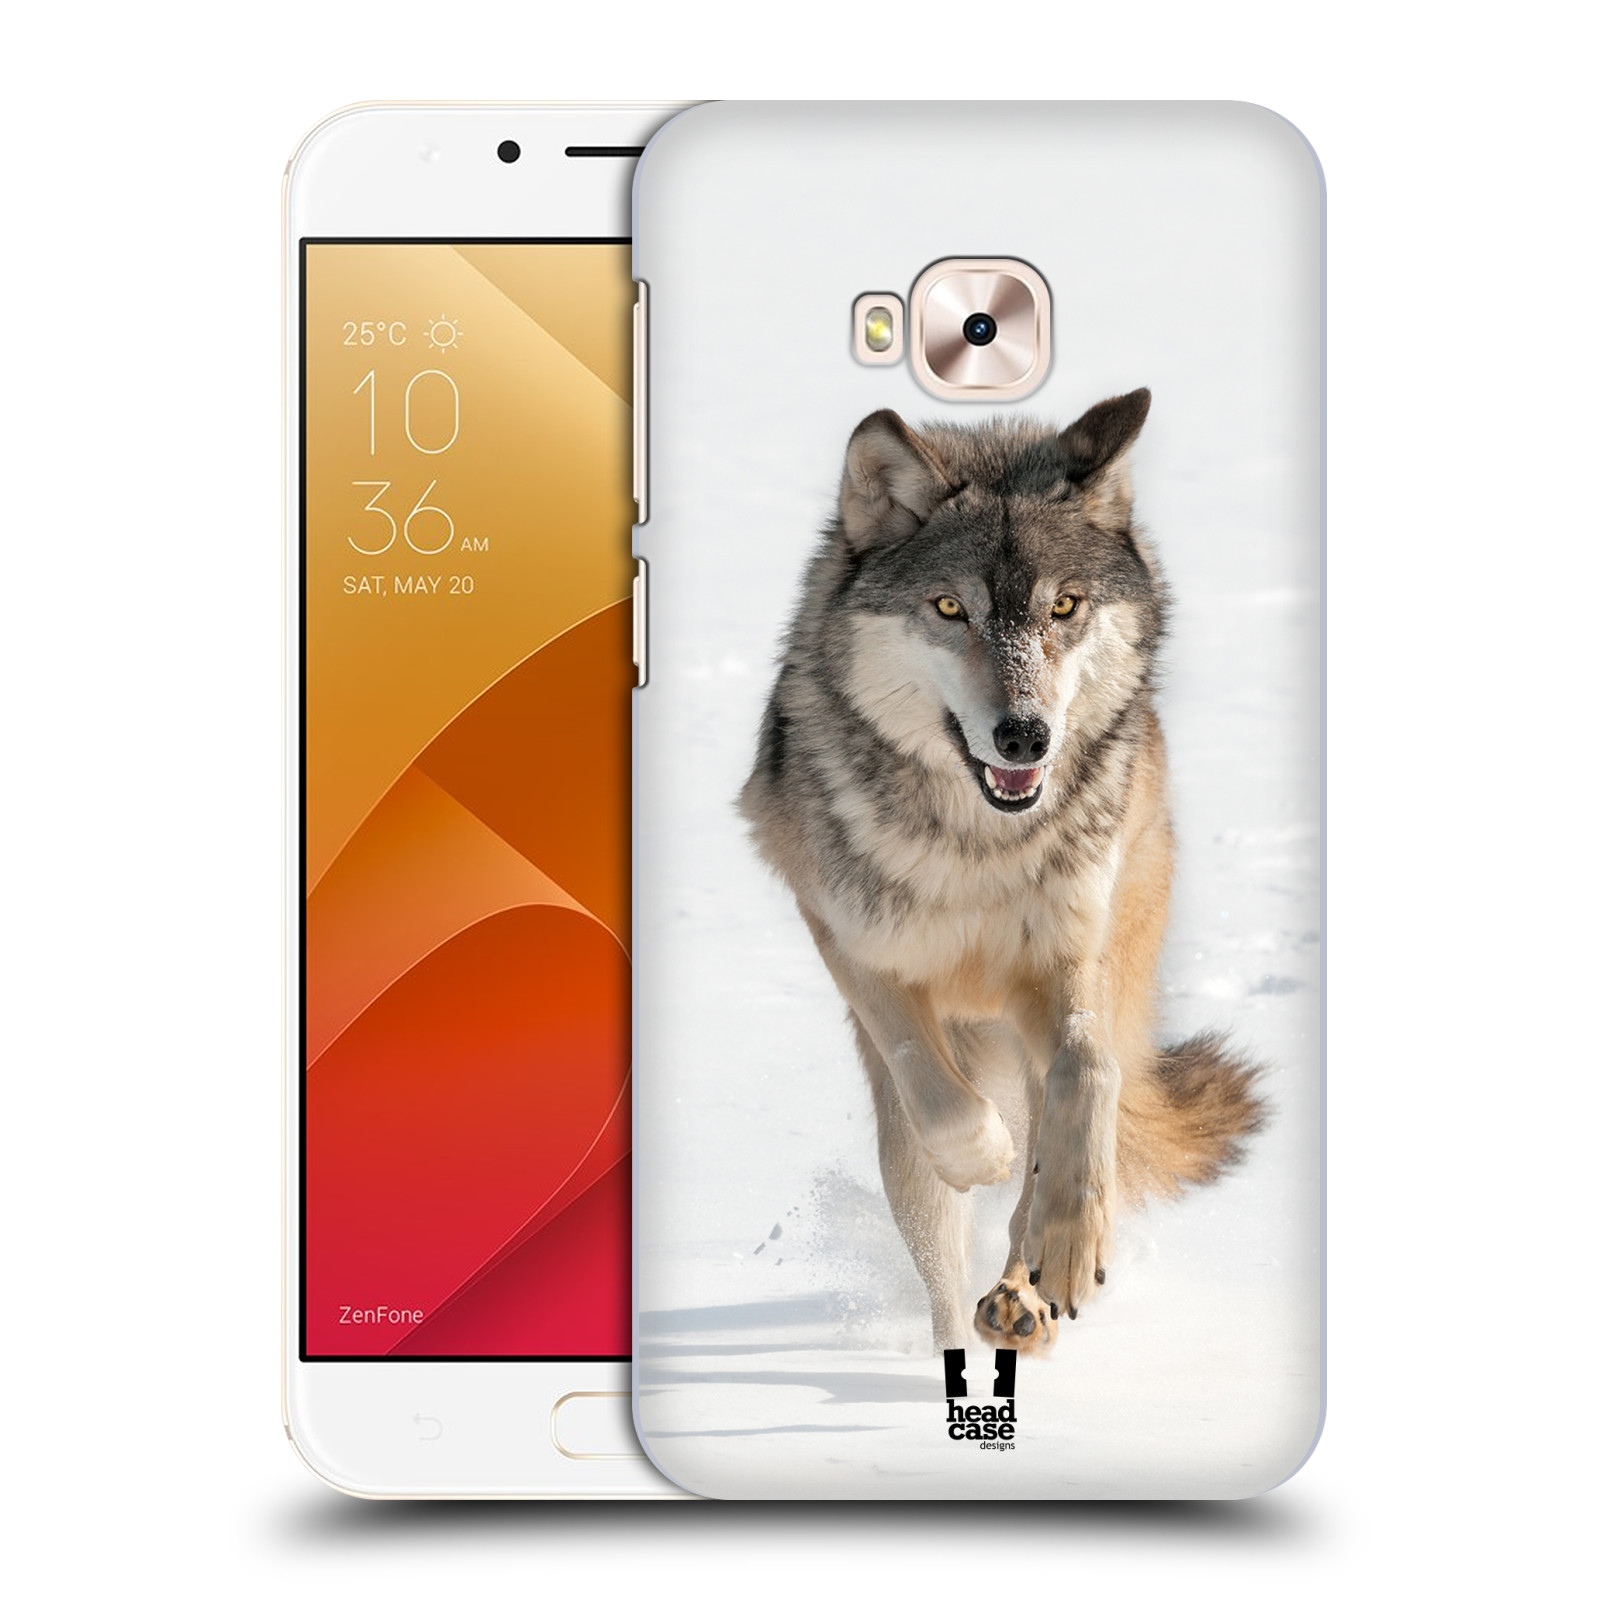 Zadní obal pro mobil Asus Zenfone 4 Selfie Pro ZD552KL - HEAD CASE - Svět zvířat divoký vlk